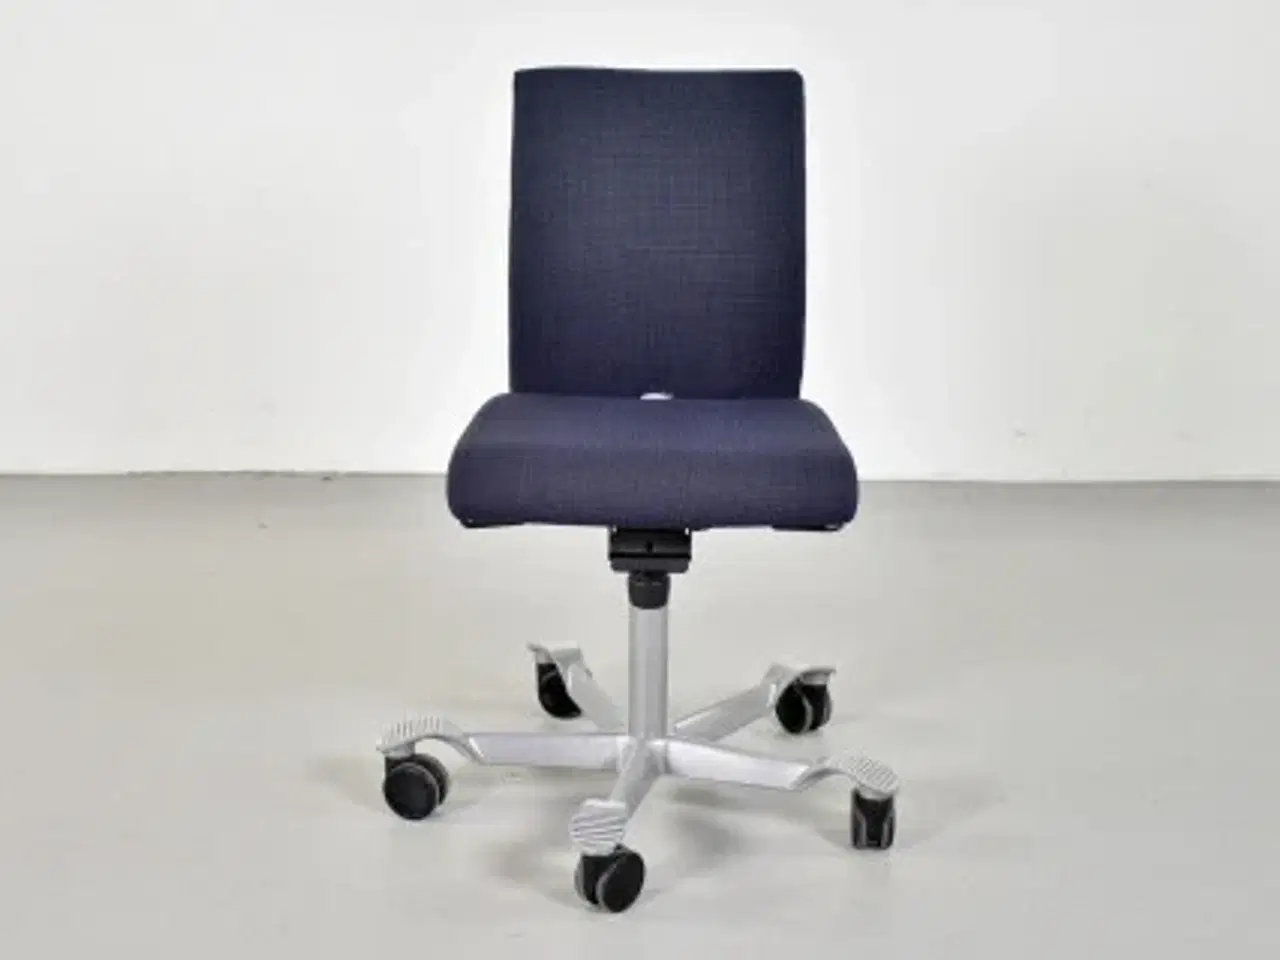 Billede 1 - Häg h04 kontorstol med sort/blå polster og gråt stel